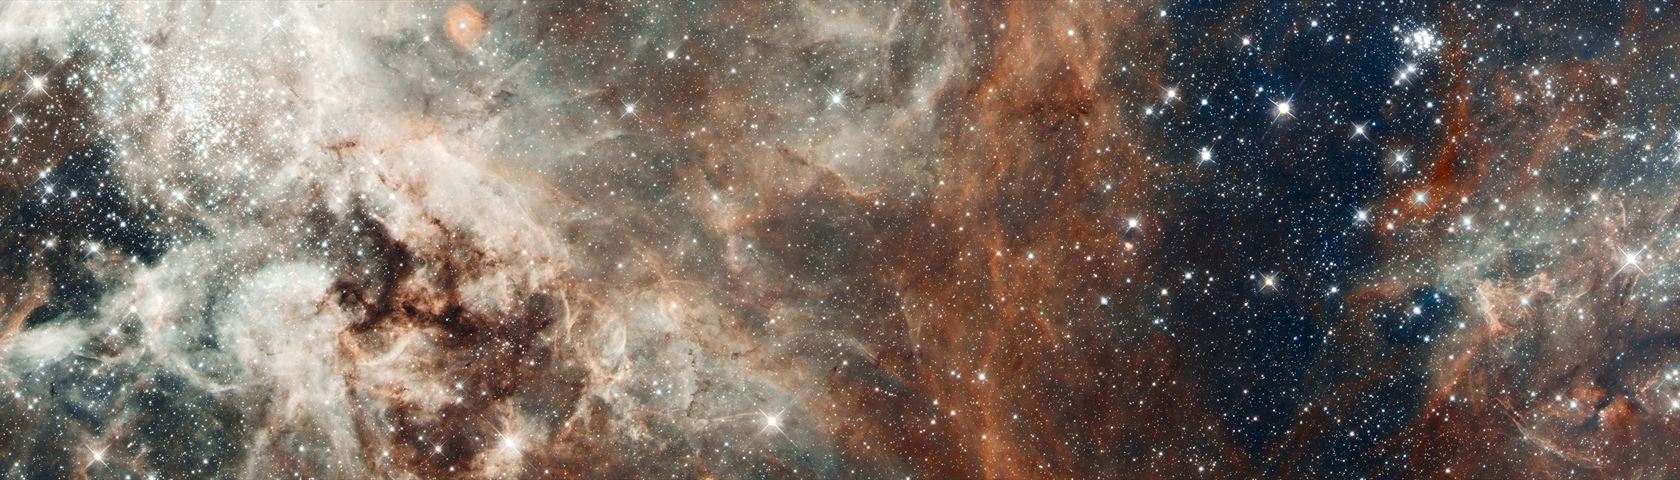 Hubble: Tarantula Nebula